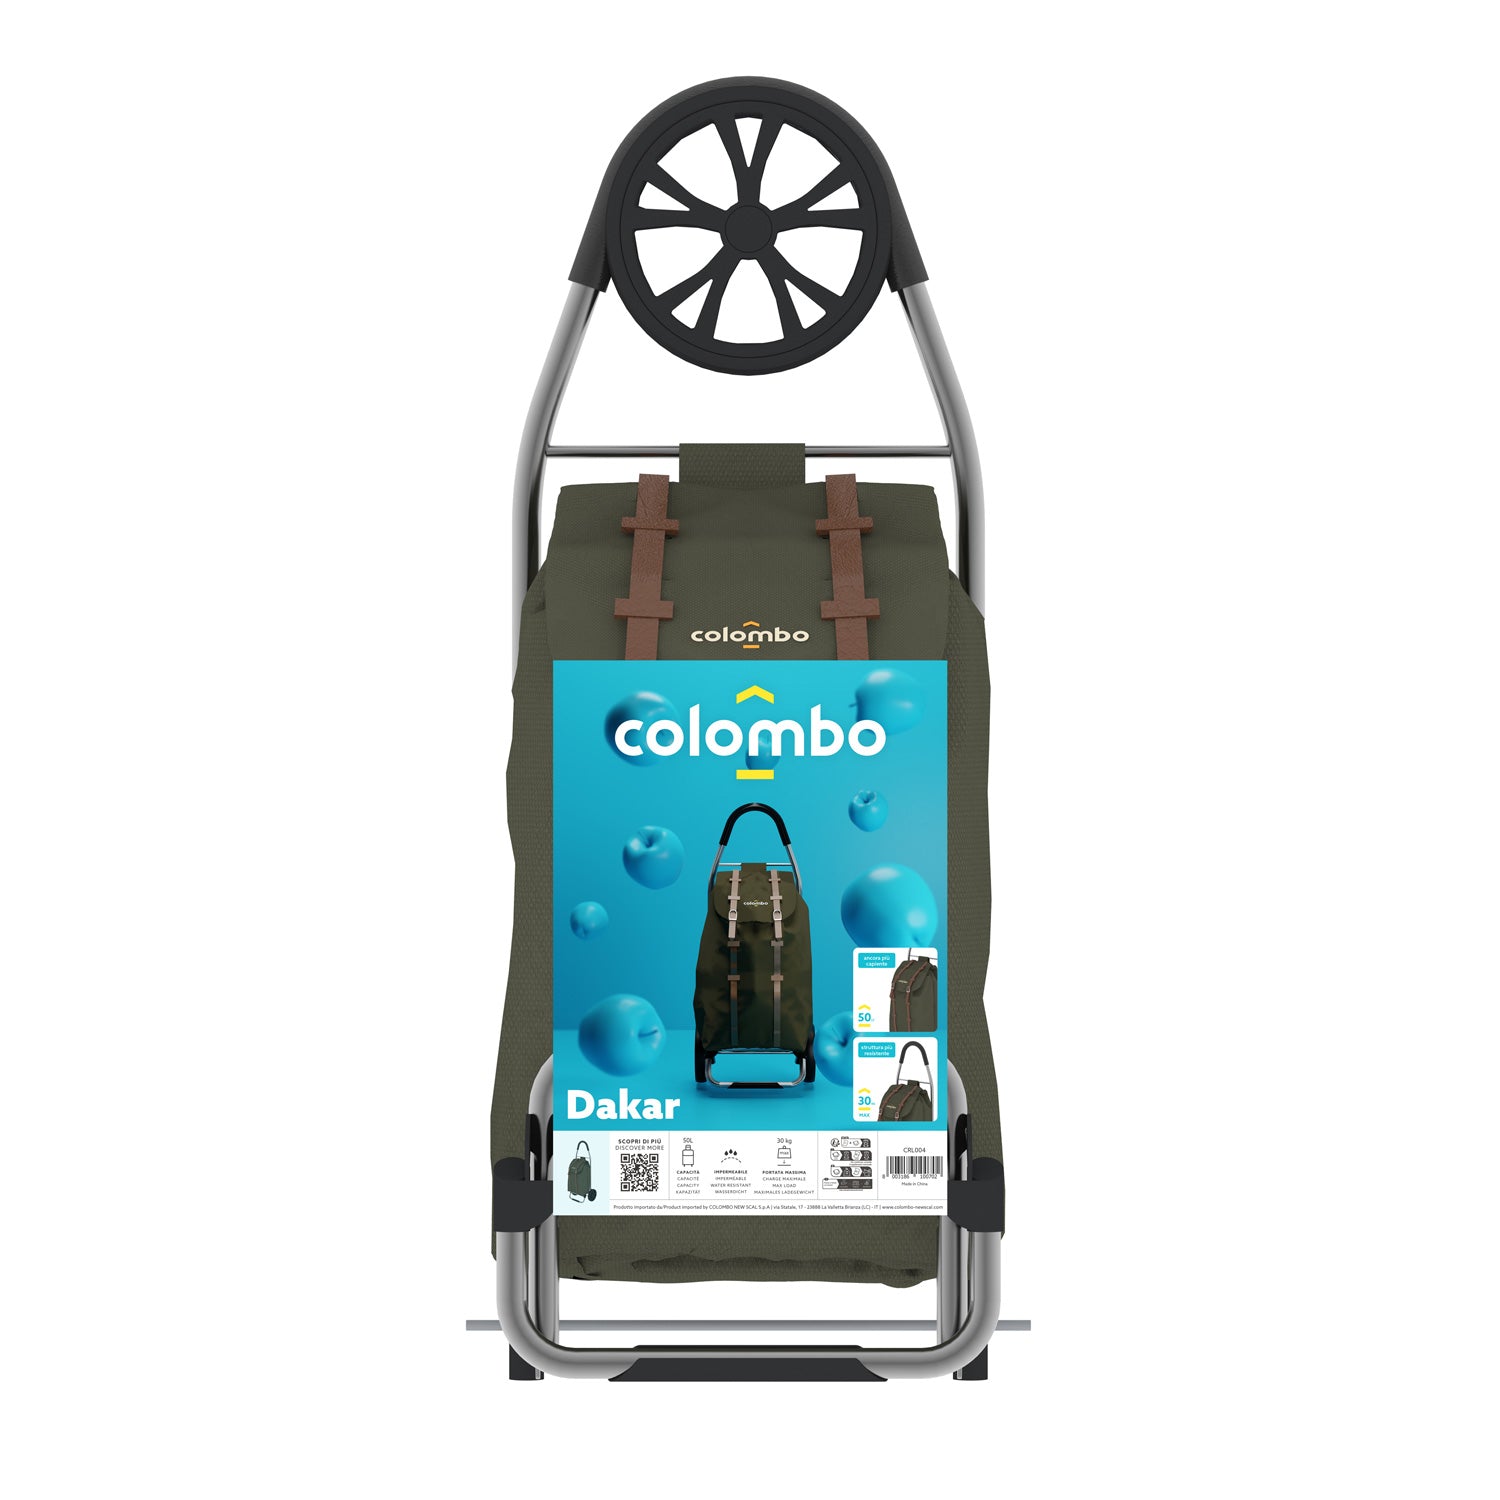 Einkaufstrolley, Einkaufswagen, mit XL-Rädern, wasserdichter Polyester-Tasche, 50 Liter, Grün, Colombo DAKAR, 2